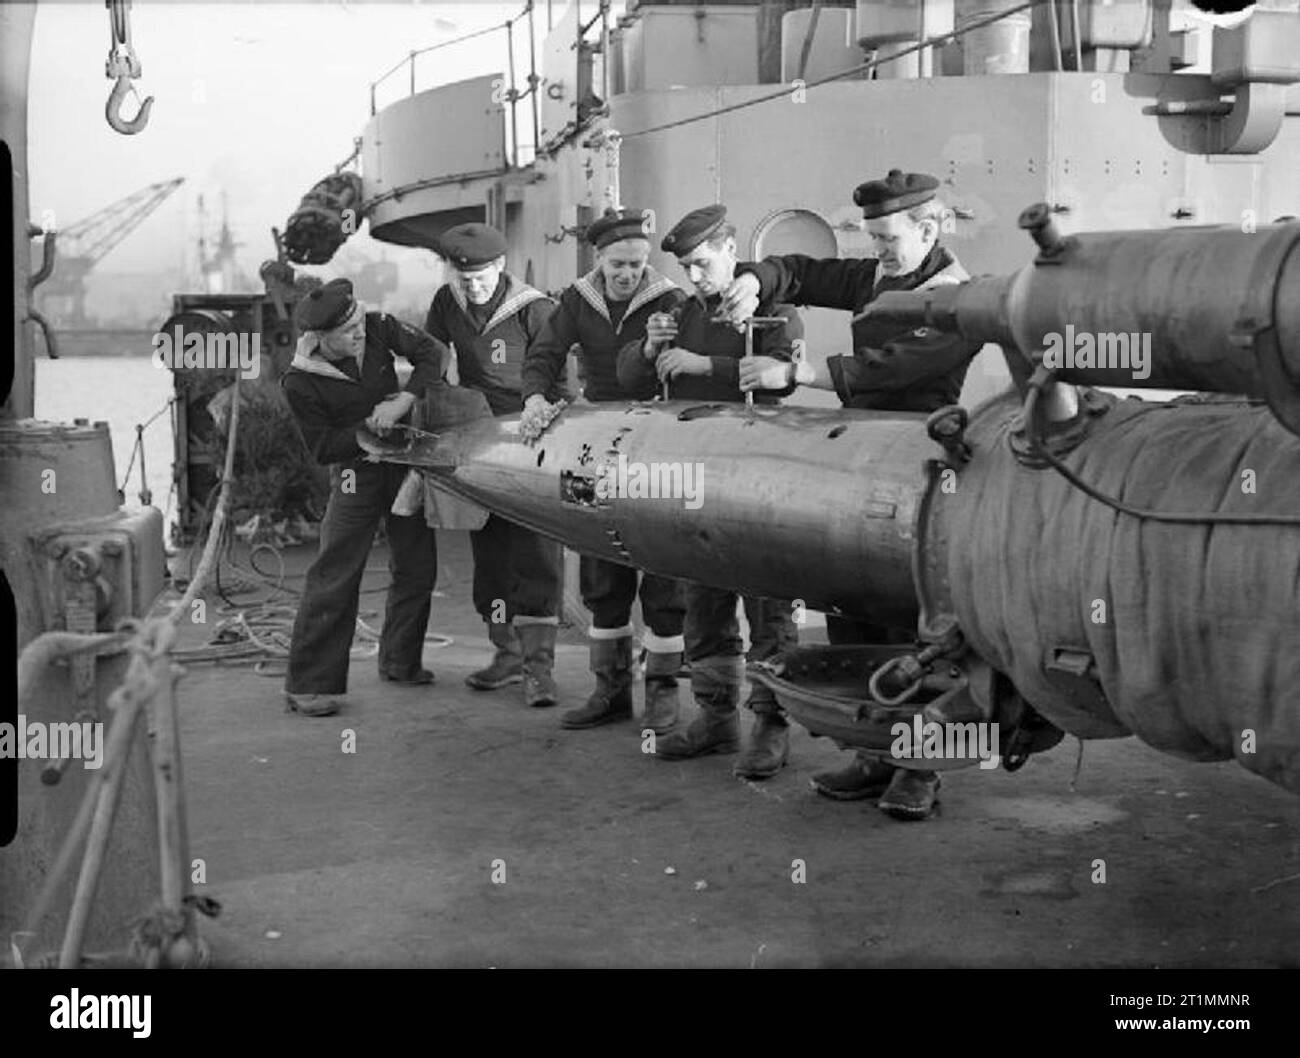 La Royal Navy pendant la Seconde Guerre mondiale pour se préparer à nouveau la mer, marins norvégiens la révision de nouvelles torpilles à bord du destroyer norvégien KNM STORD retour après son rôle dans le naufrage du SCHARNHORST. Banque D'Images